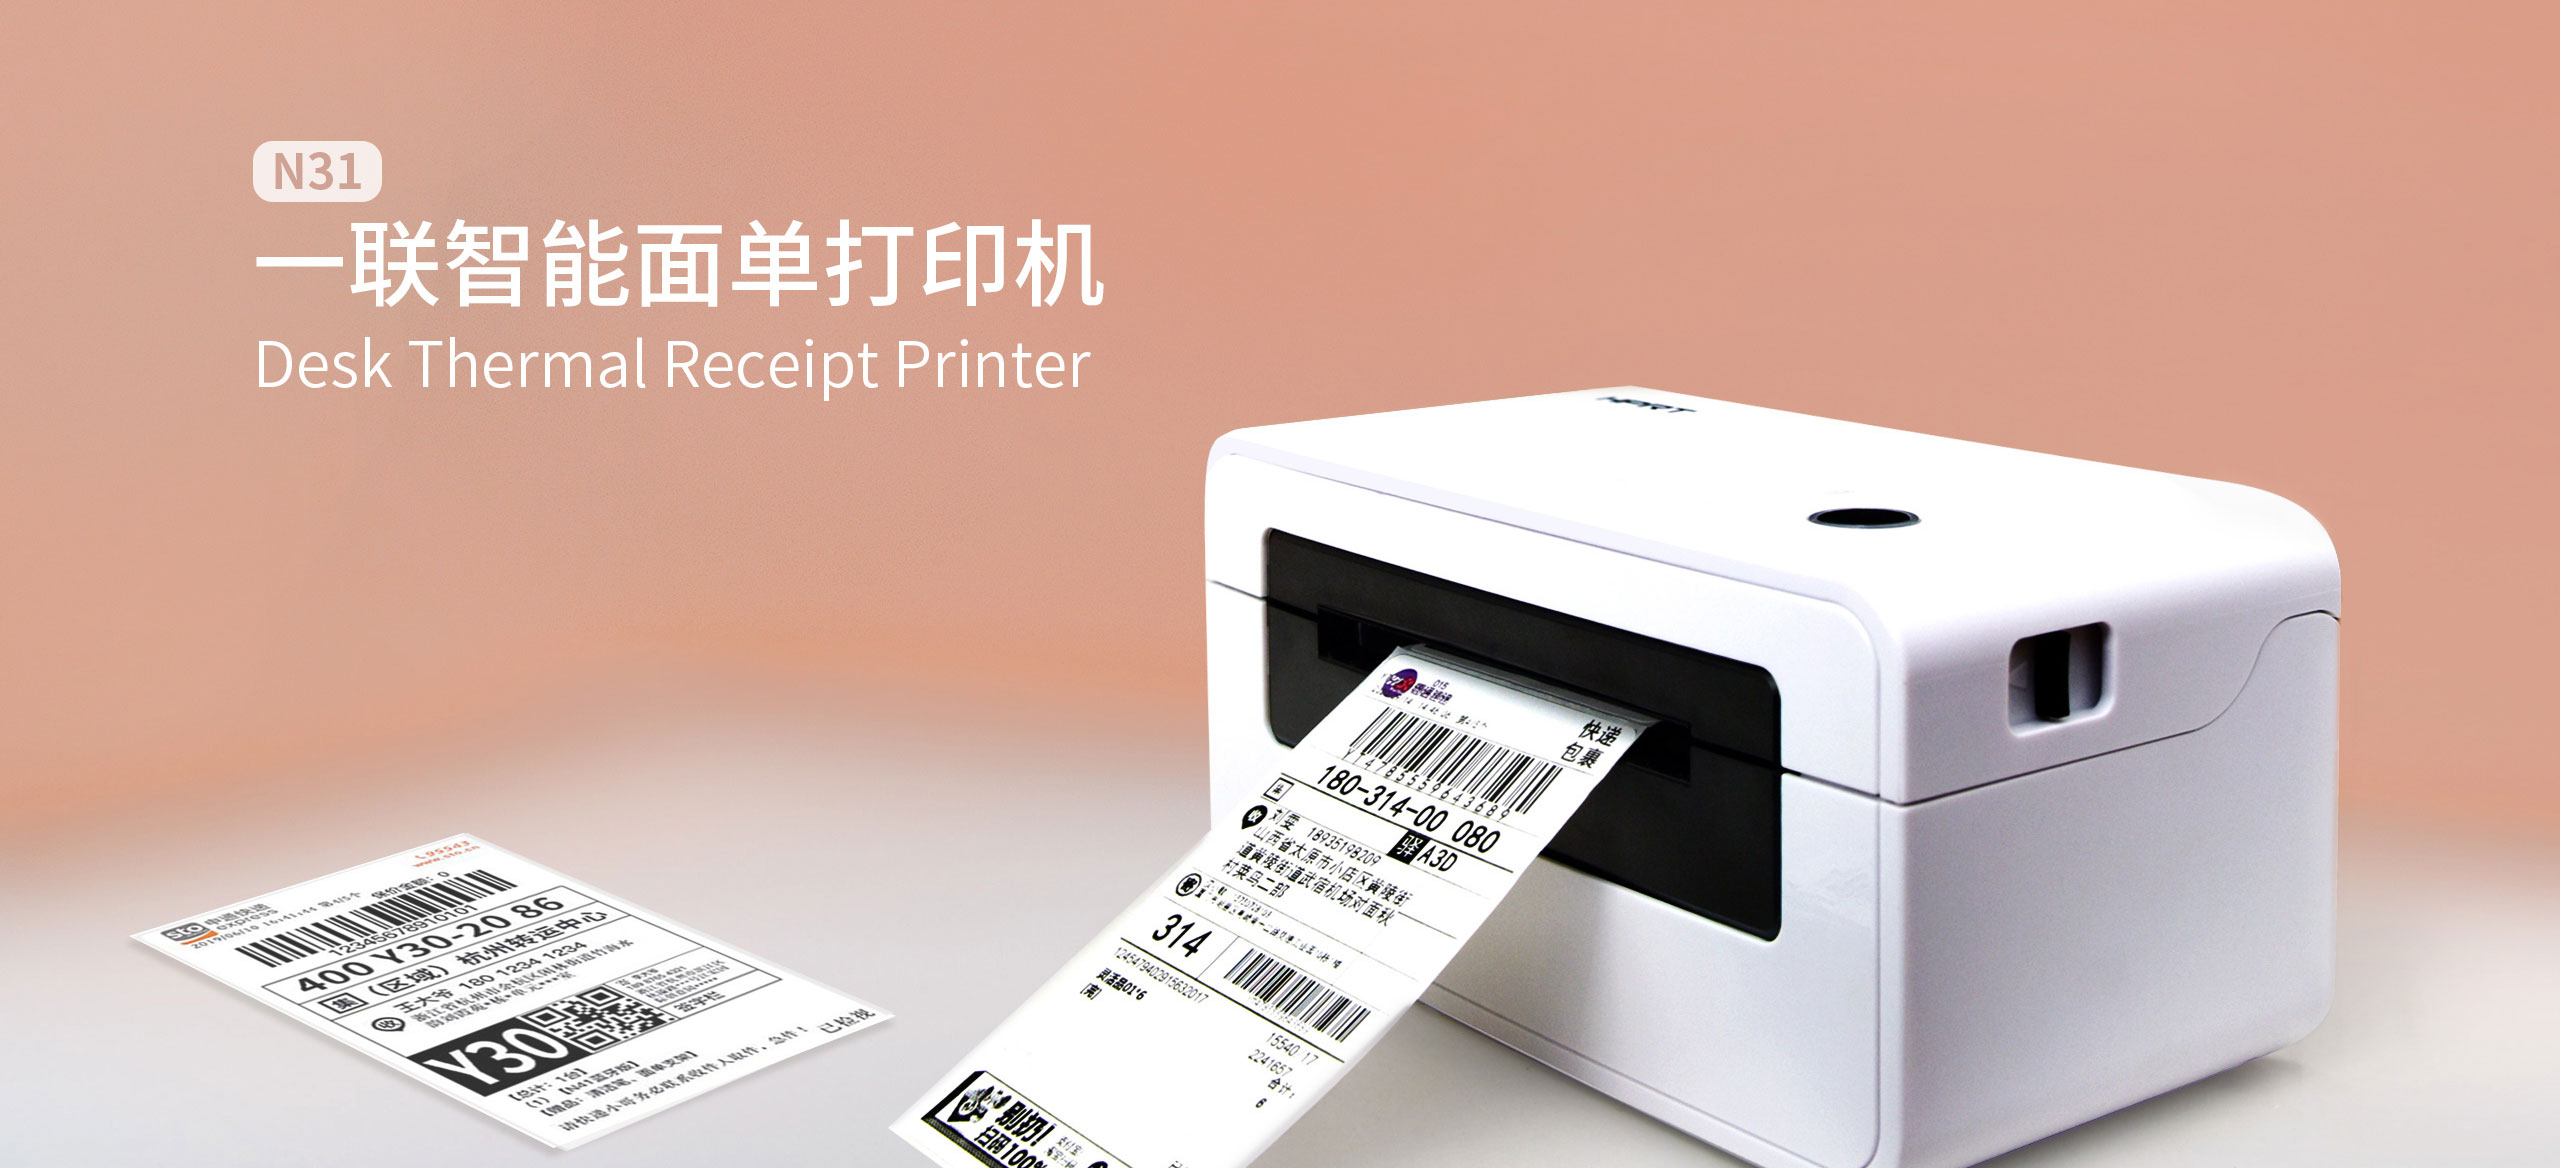 漢印N31一聯智能面單打印機